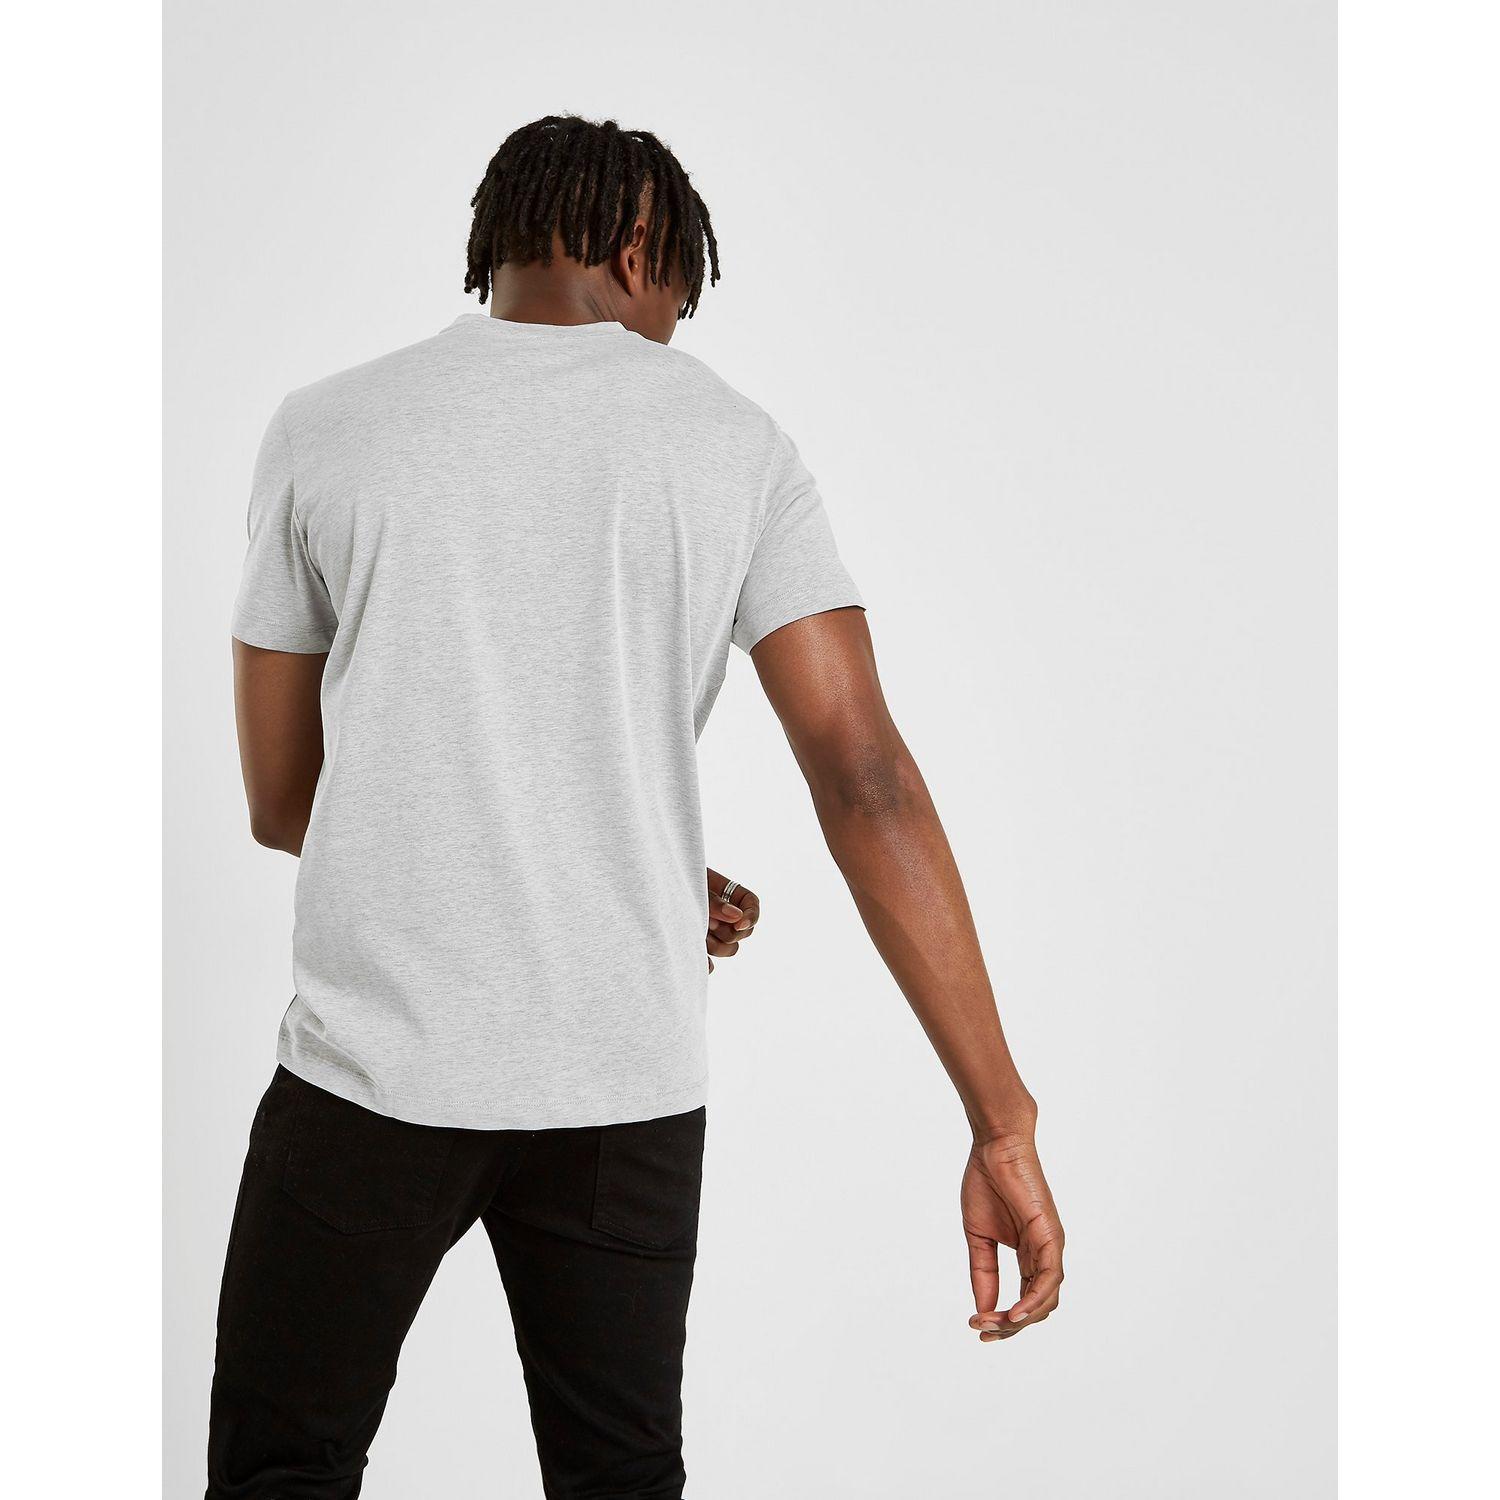 Jack Wolfskin Large Logo Ocean Short Sleeve T-shirt in White for Men - Lyst